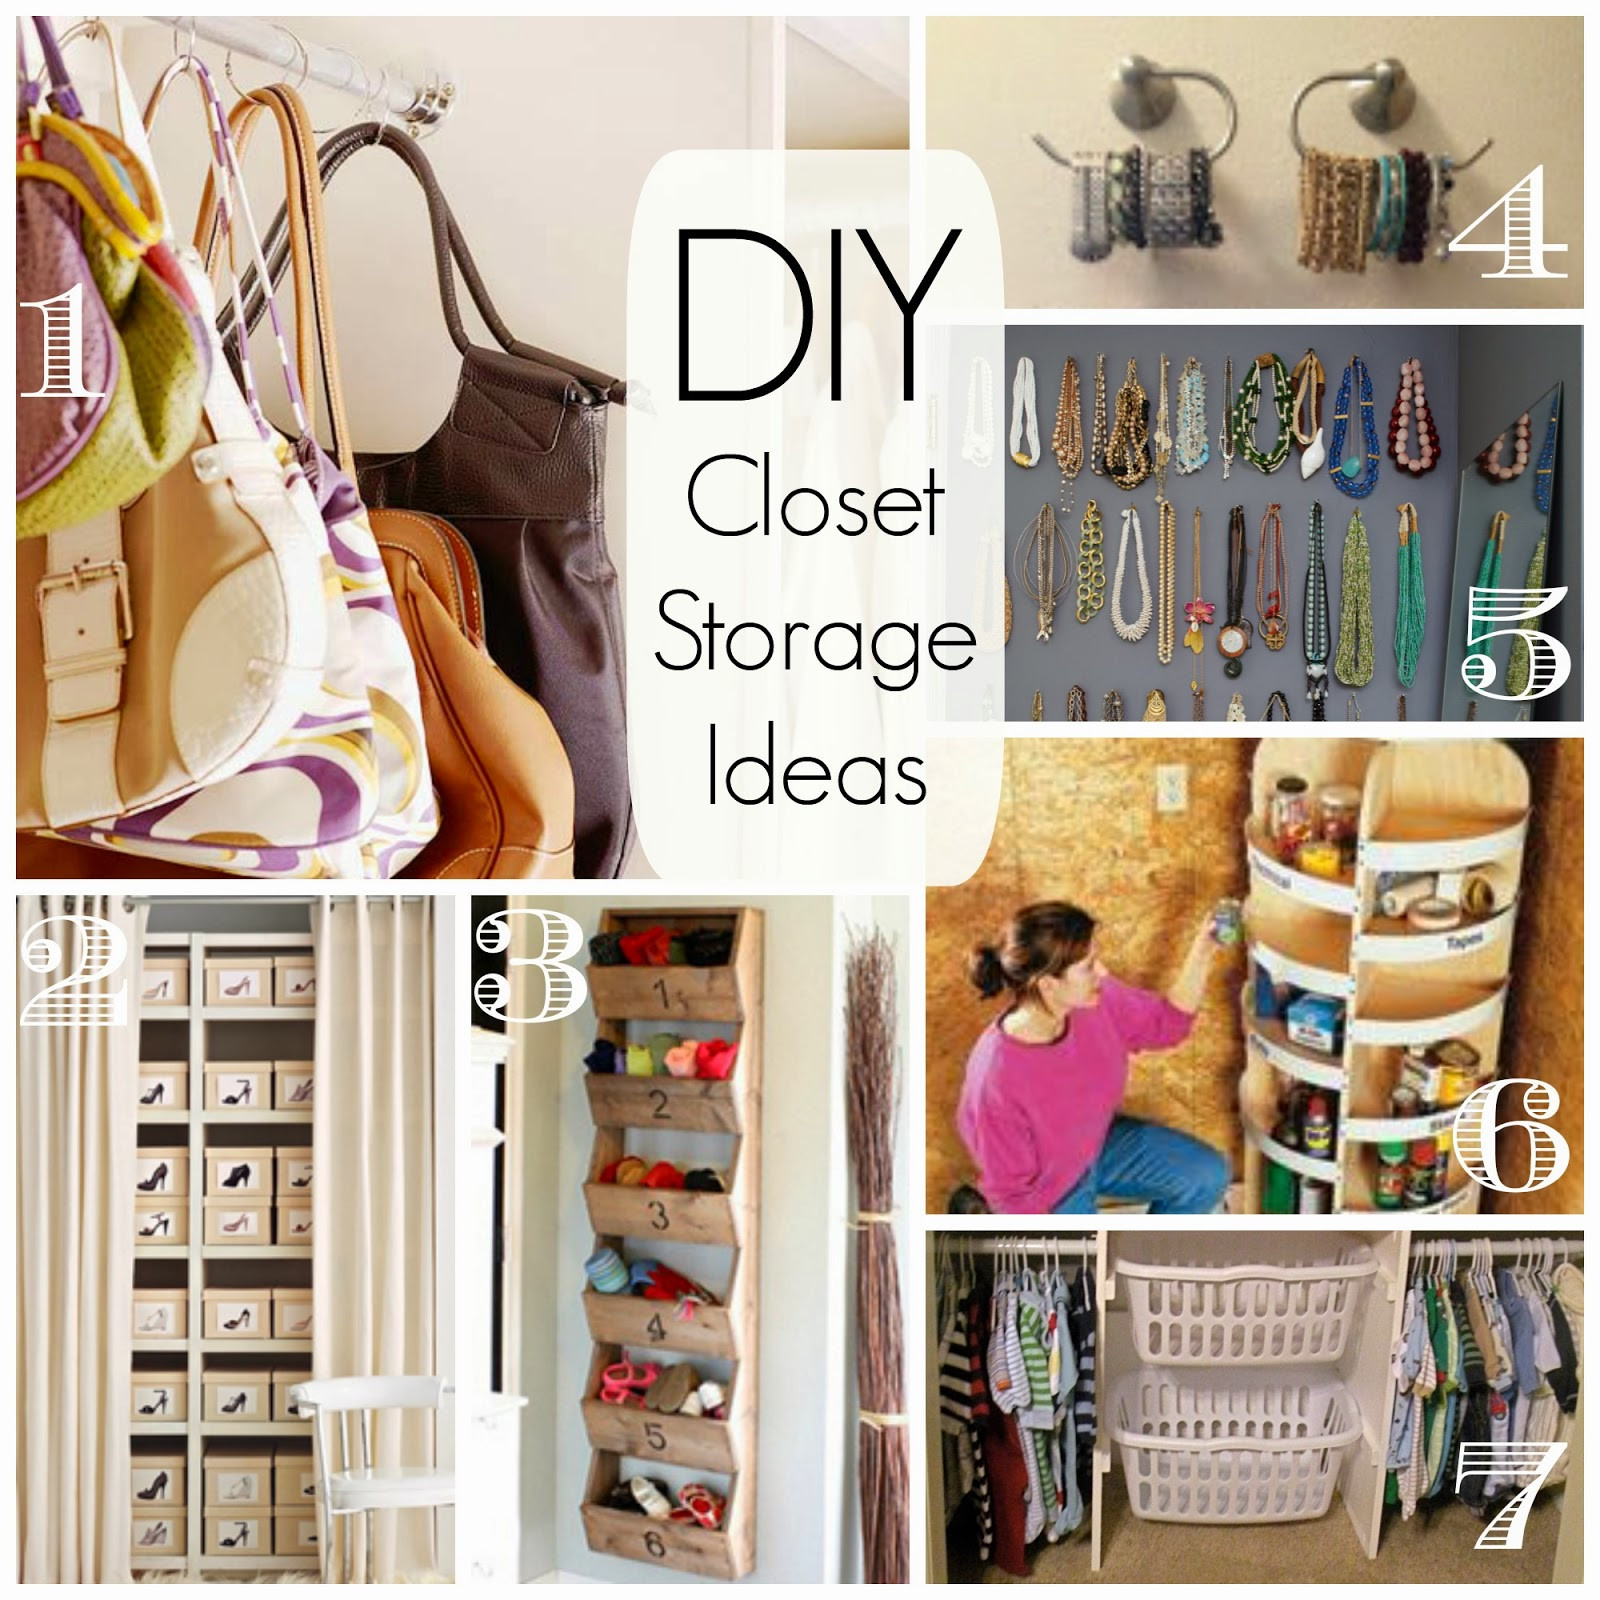 DIY Closet Organizers Ideas
 How To Build A Closet OrganizerConfession